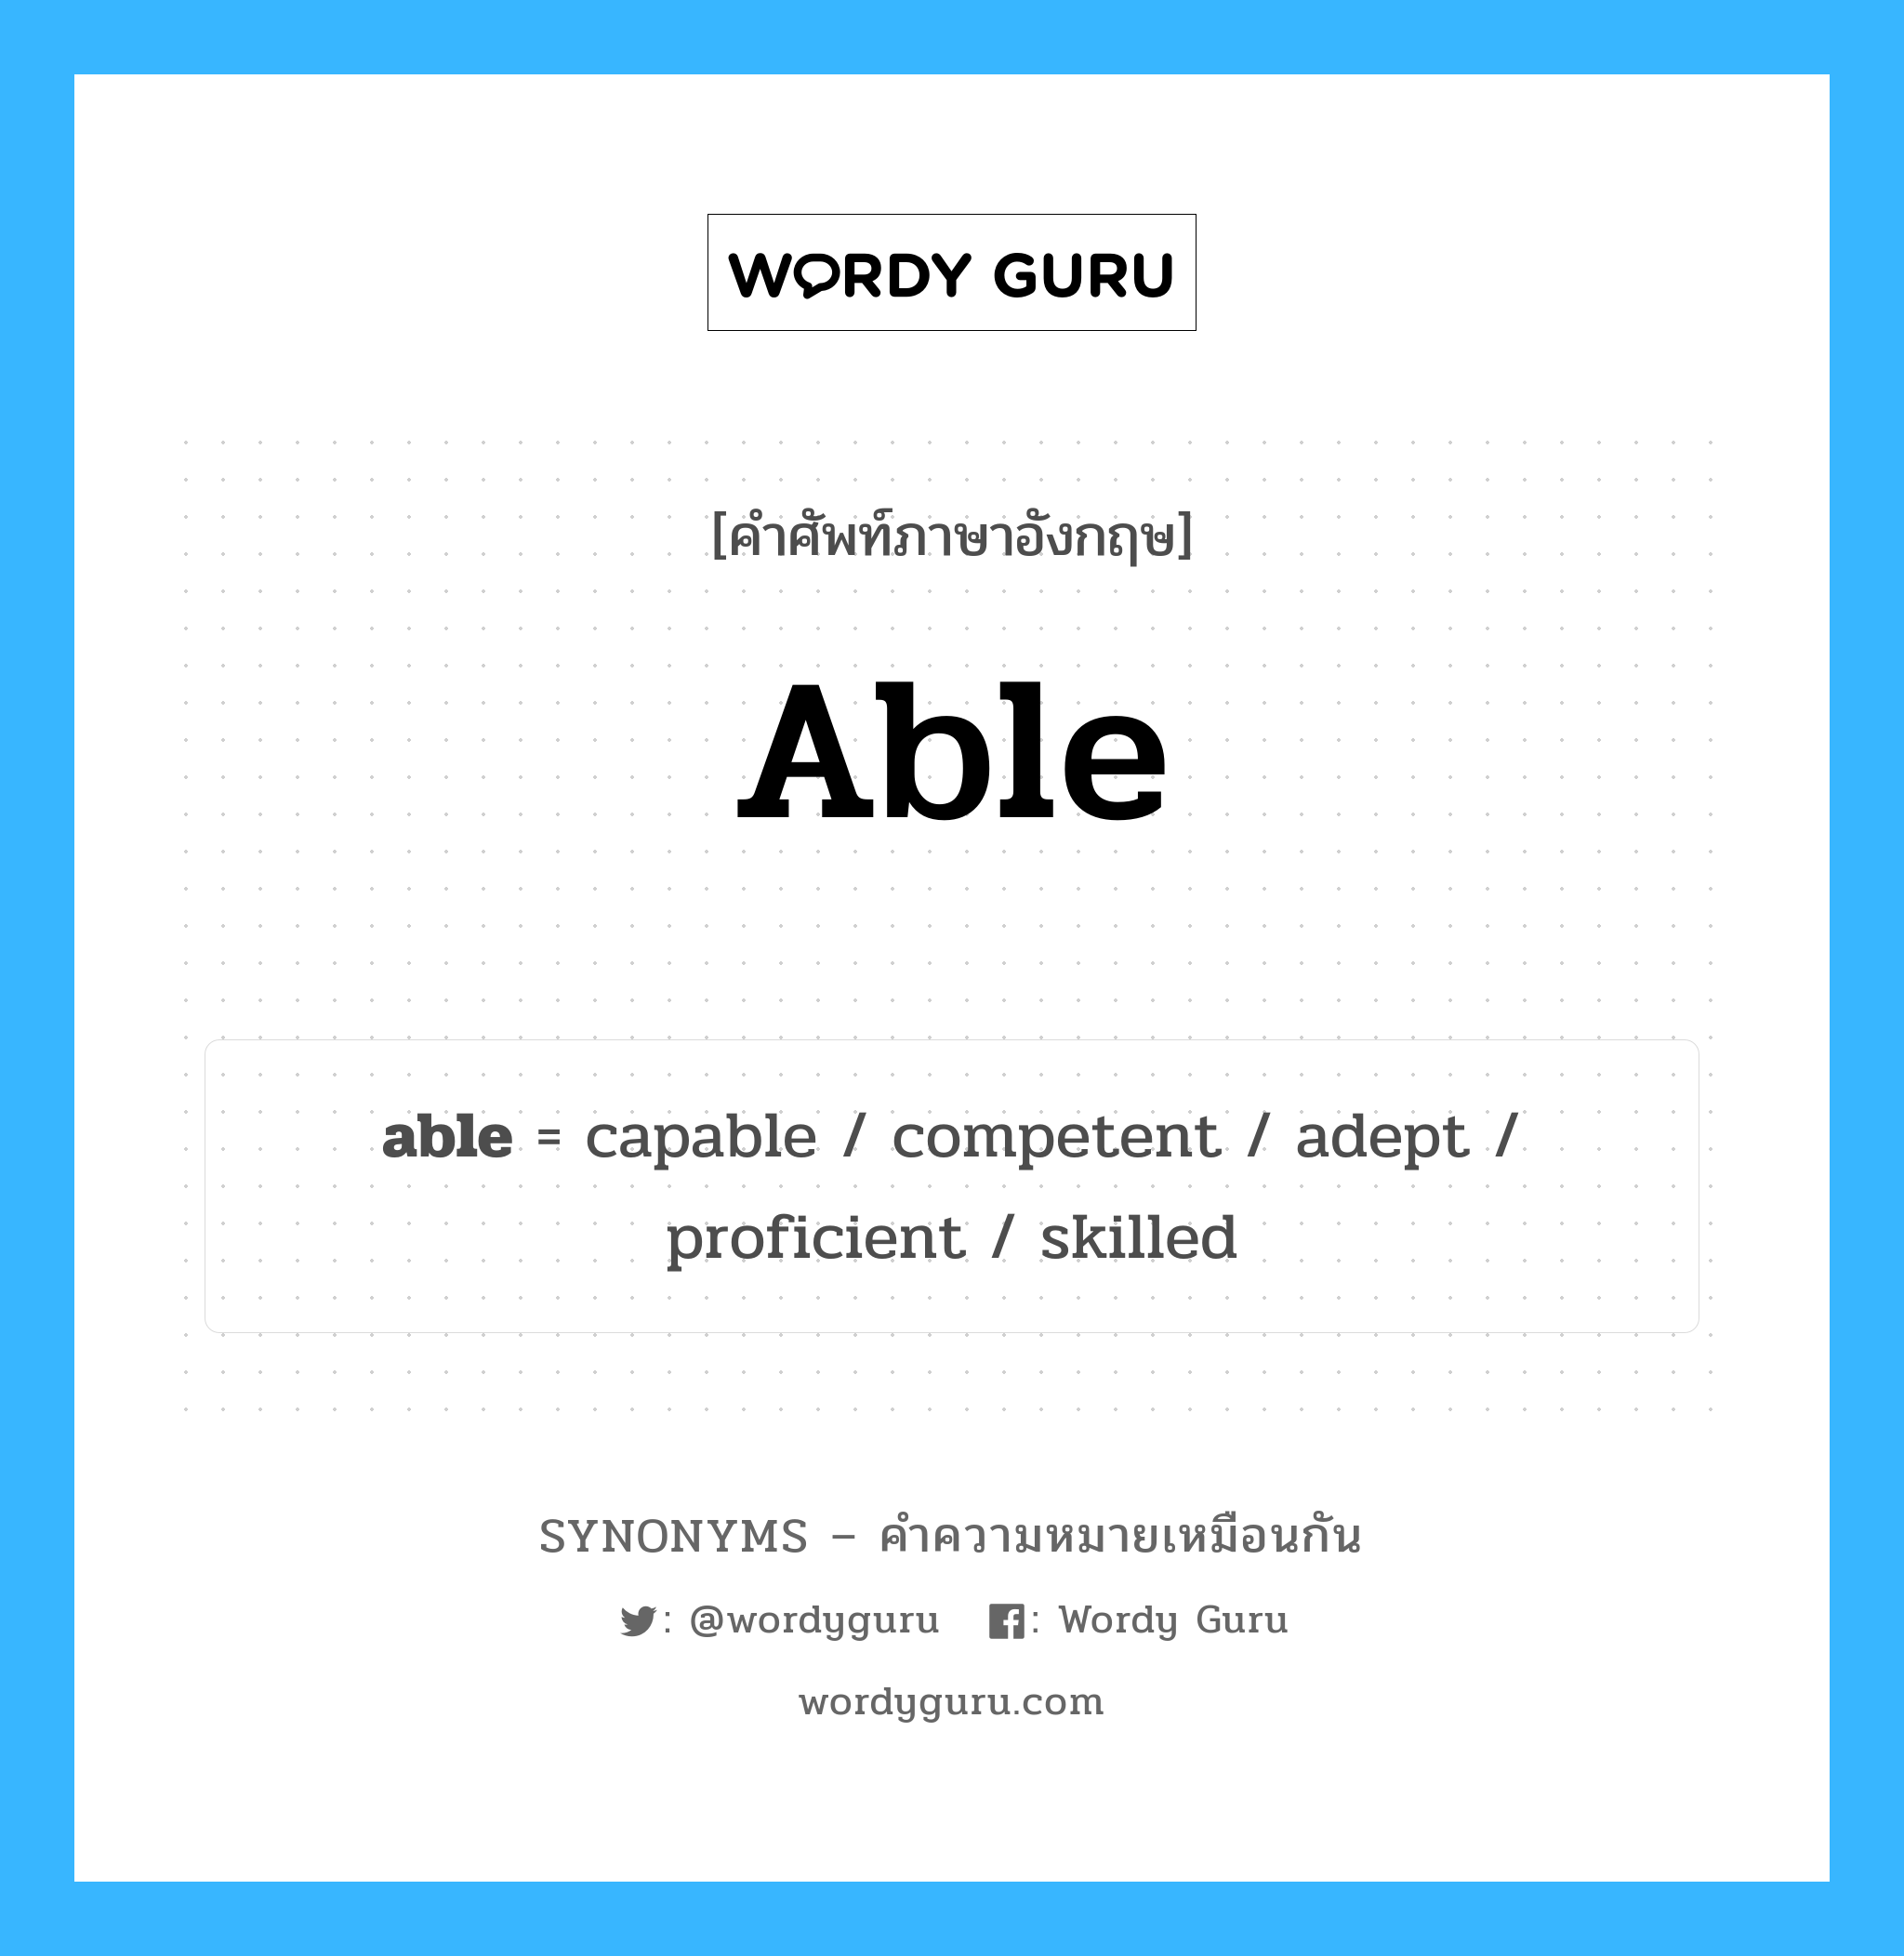 skilled เป็นหนึ่งใน able และมีคำอื่น ๆ อีกดังนี้, คำศัพท์ภาษาอังกฤษ skilled ความหมายคล้ายกันกับ able แปลว่า มีทักษะ หมวด able